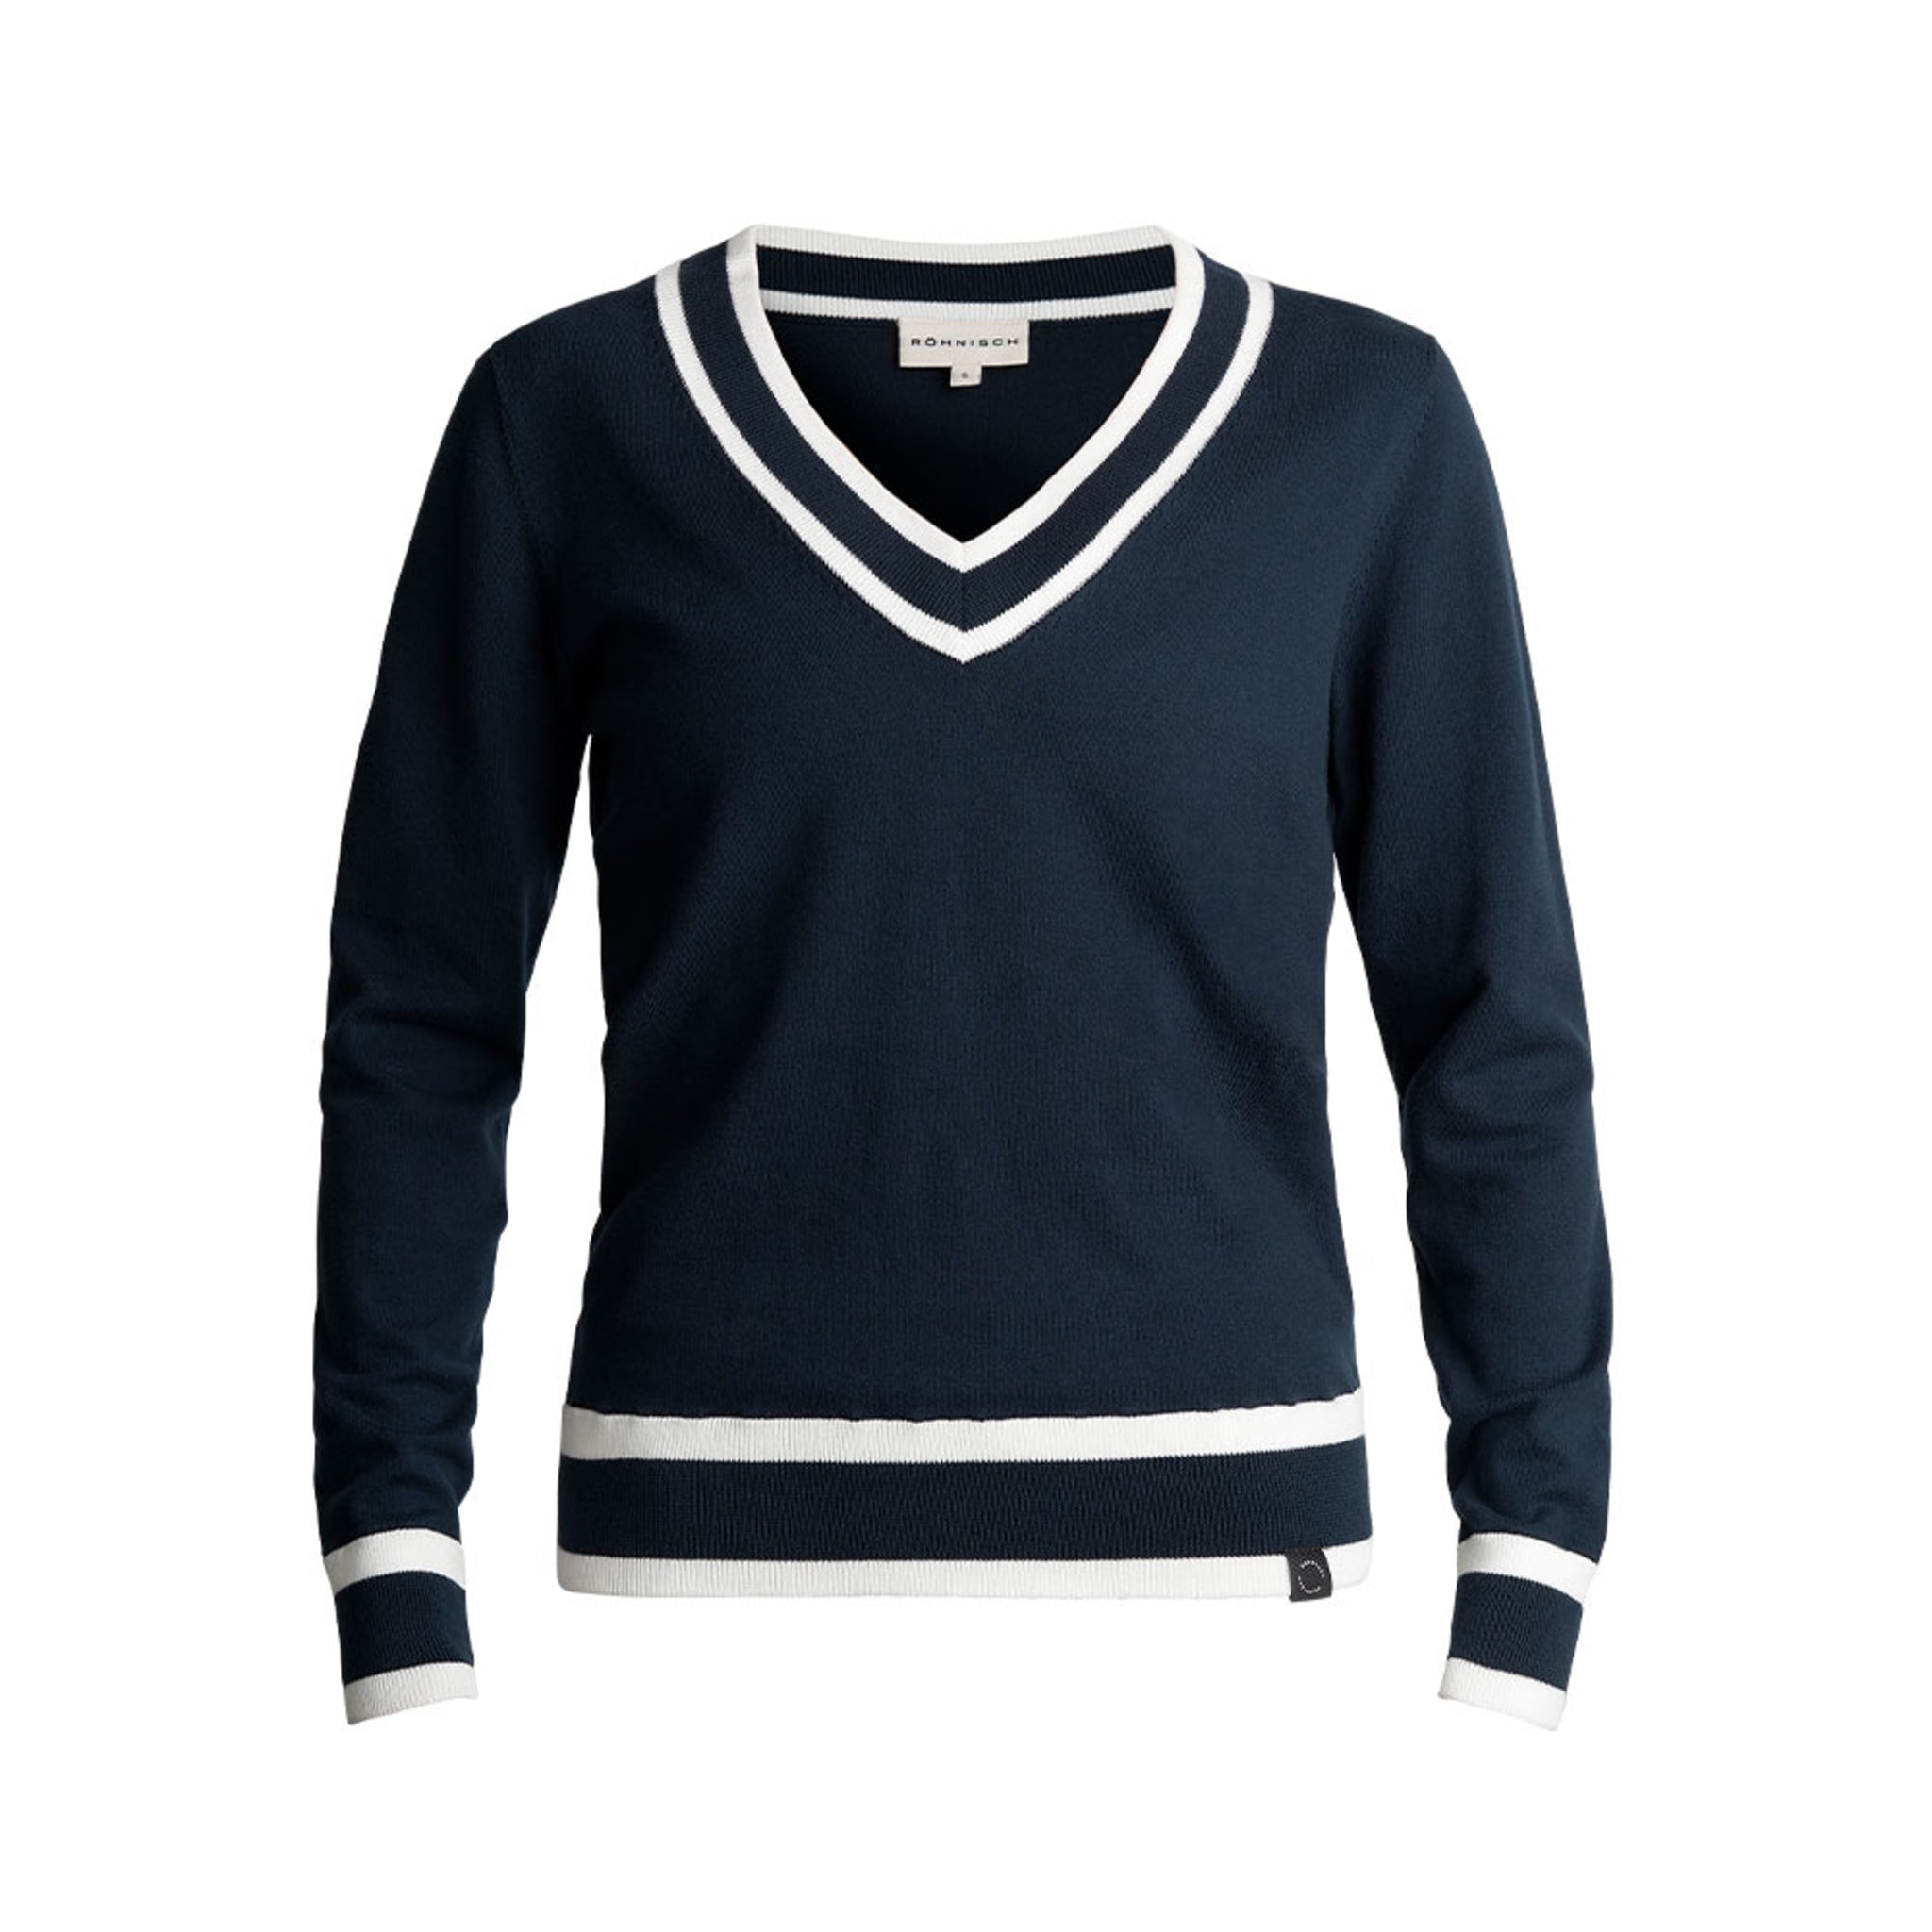 Annie sweater Top, Navy